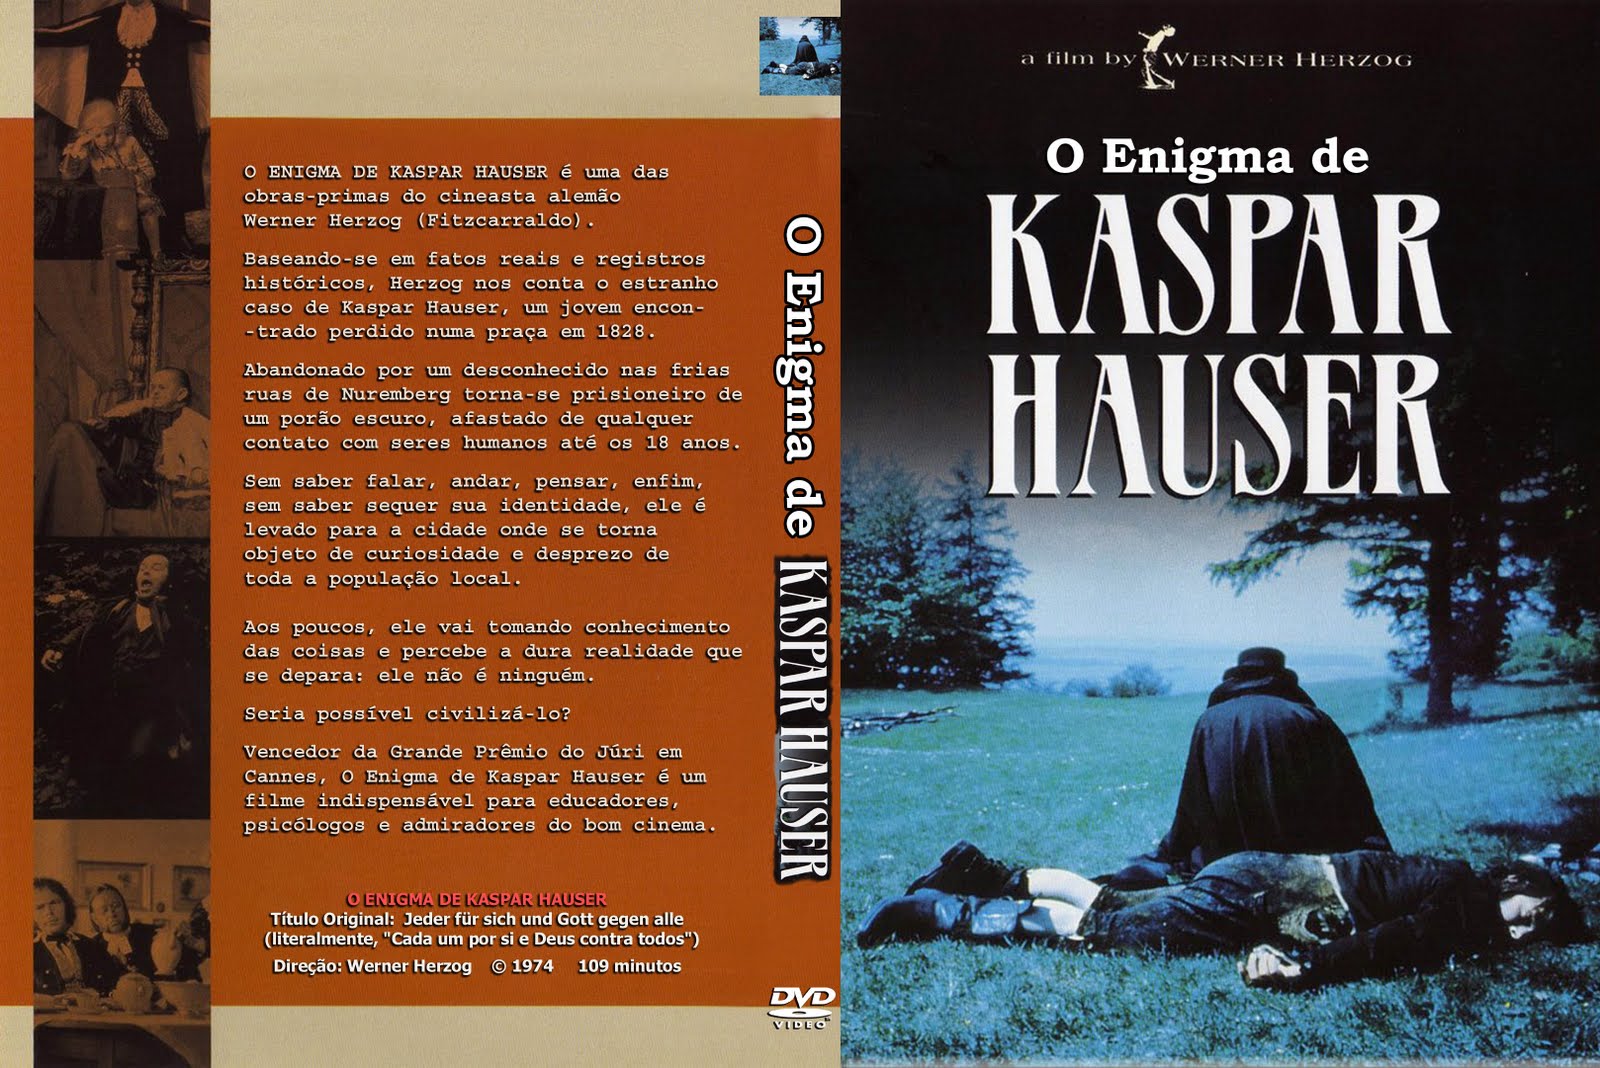 Resumo do filme O Enigma de Kaspar Hauser